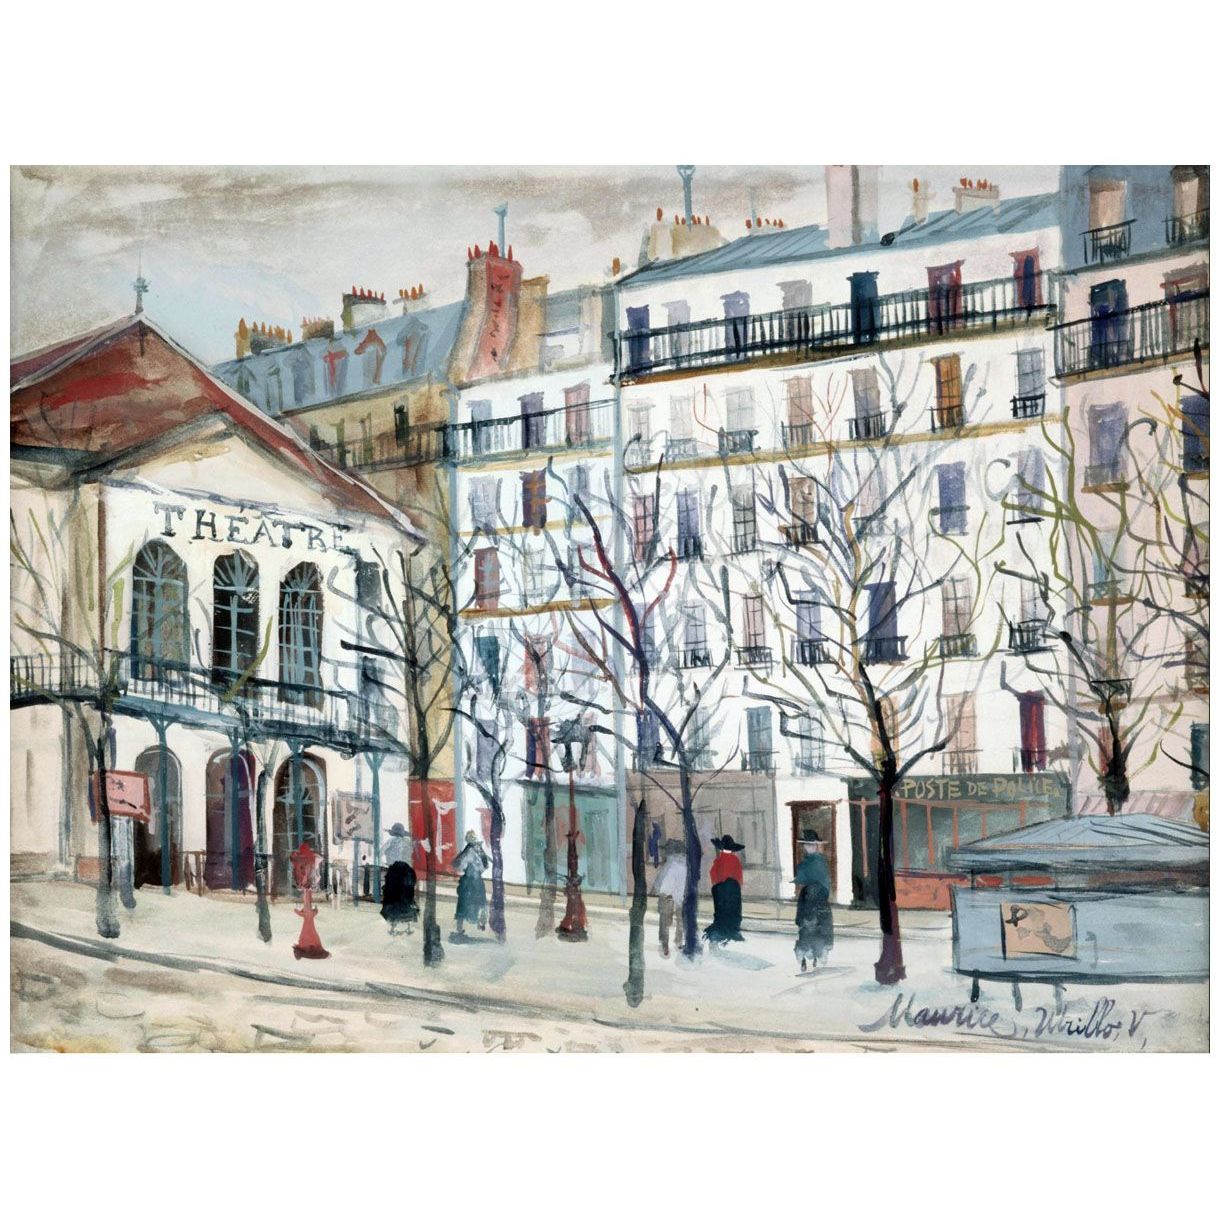 Maurice Utrillo. Le théâtre de l'Atelier. 1926. Centre Pompidou Paris